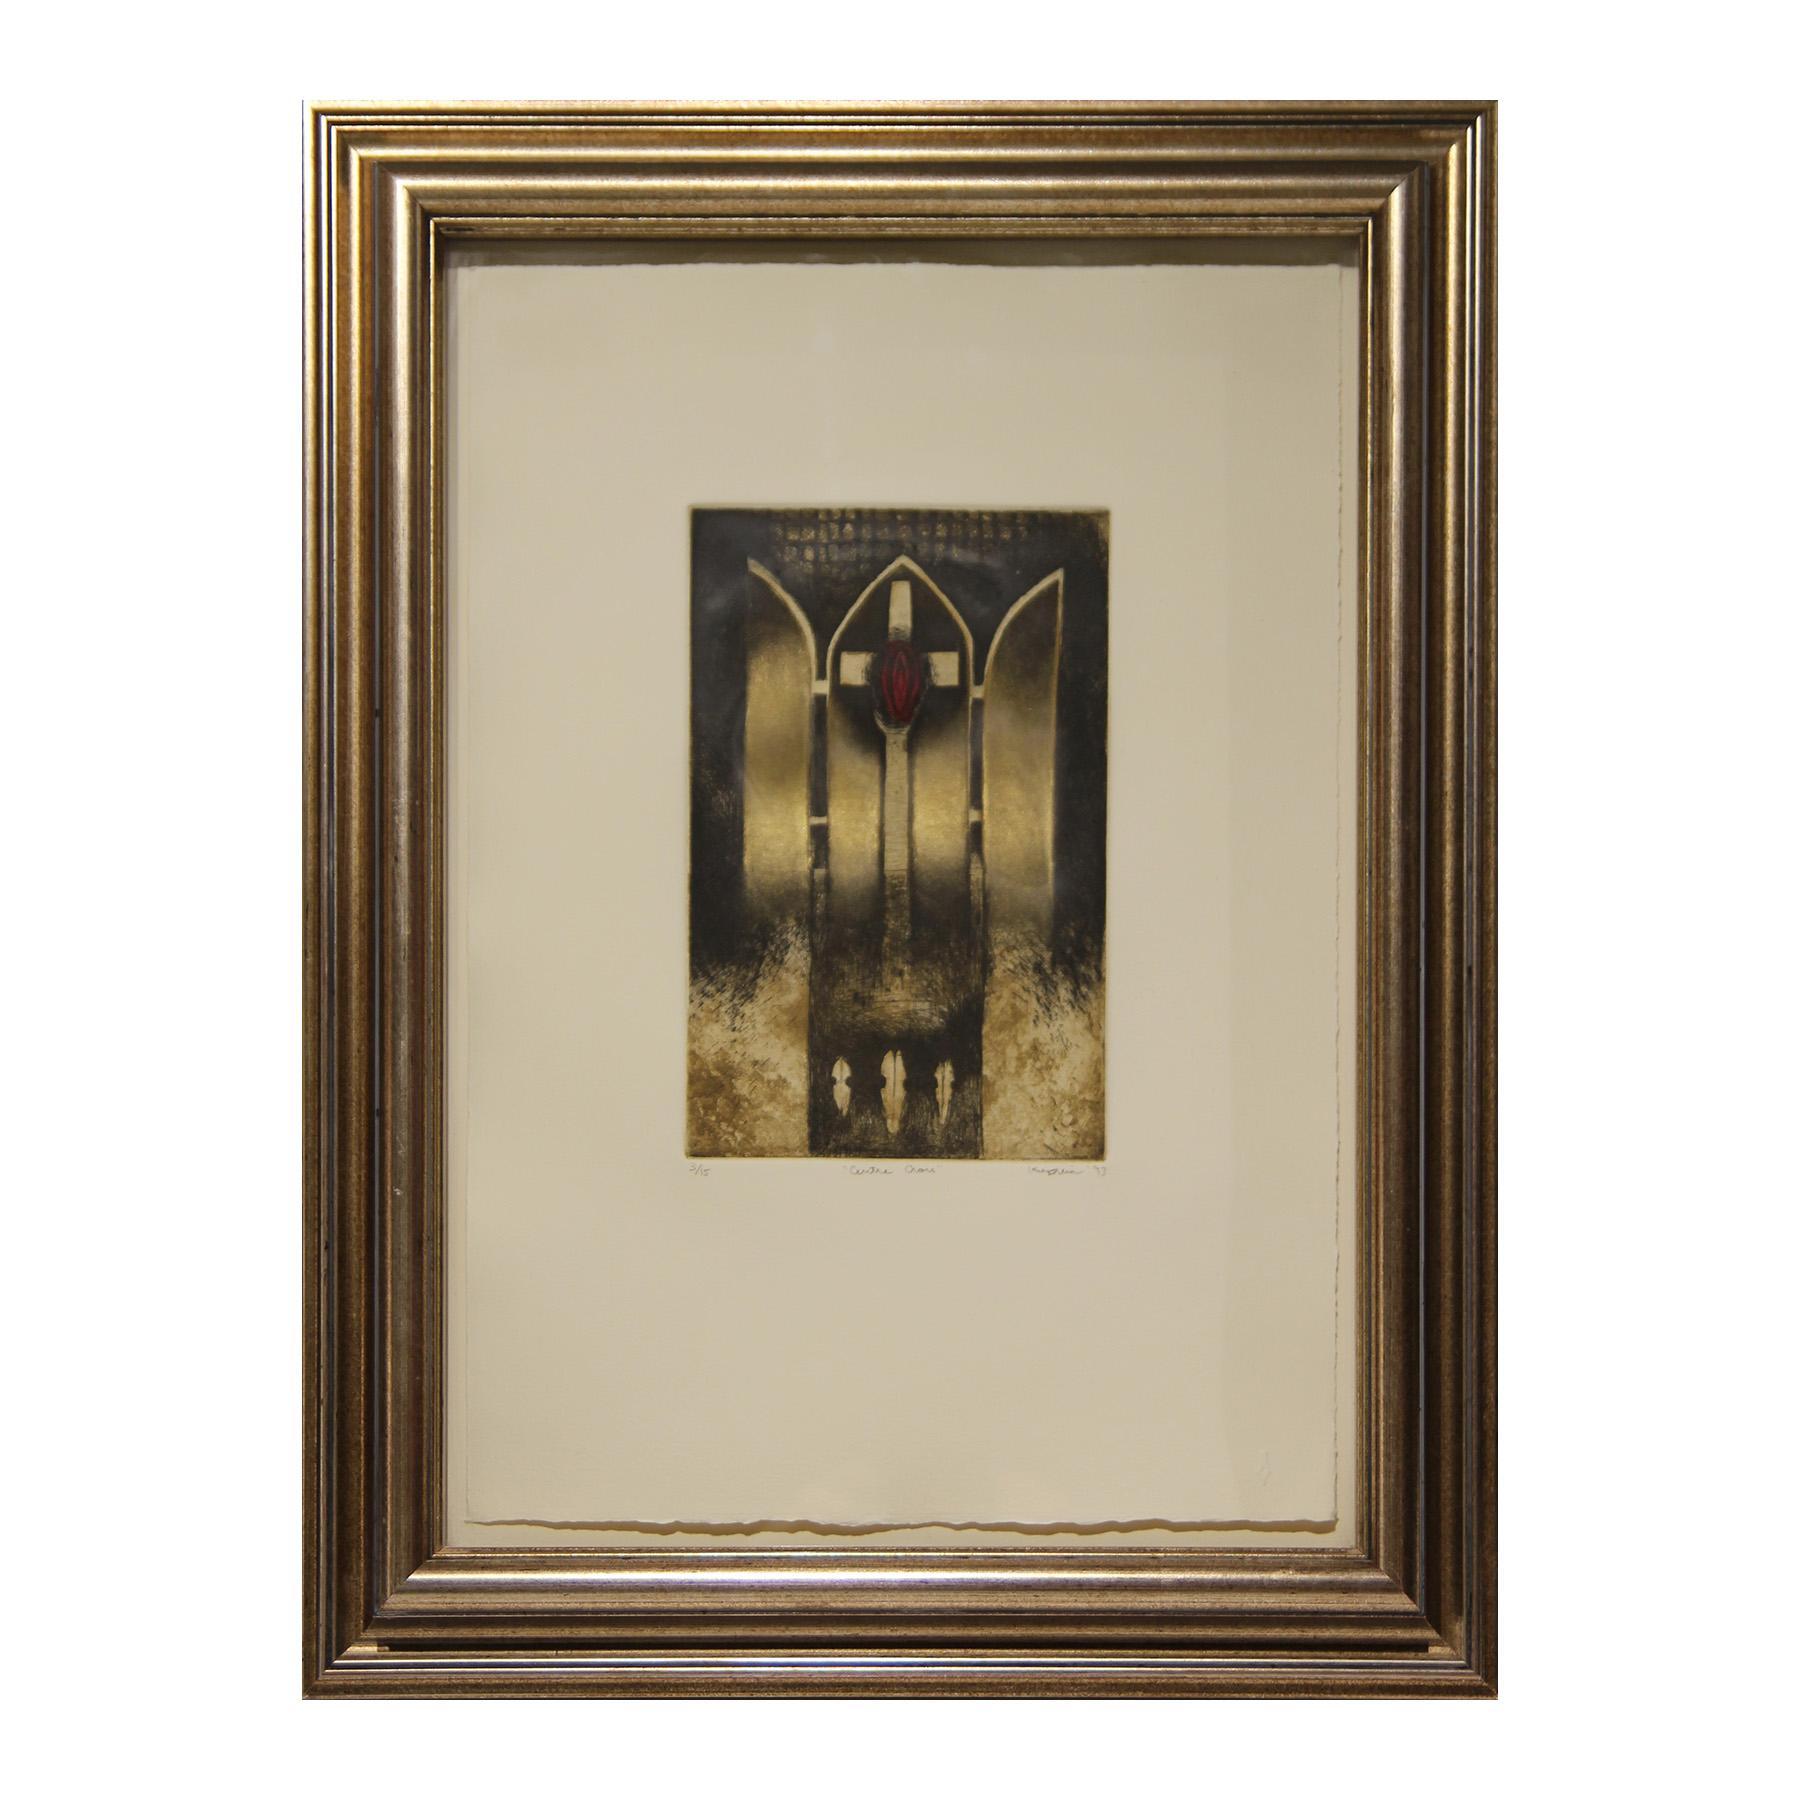 Abstract Print Sharon Kopriva - Centre de croix Gravure religieuse abstraite noire, rouge et métallique